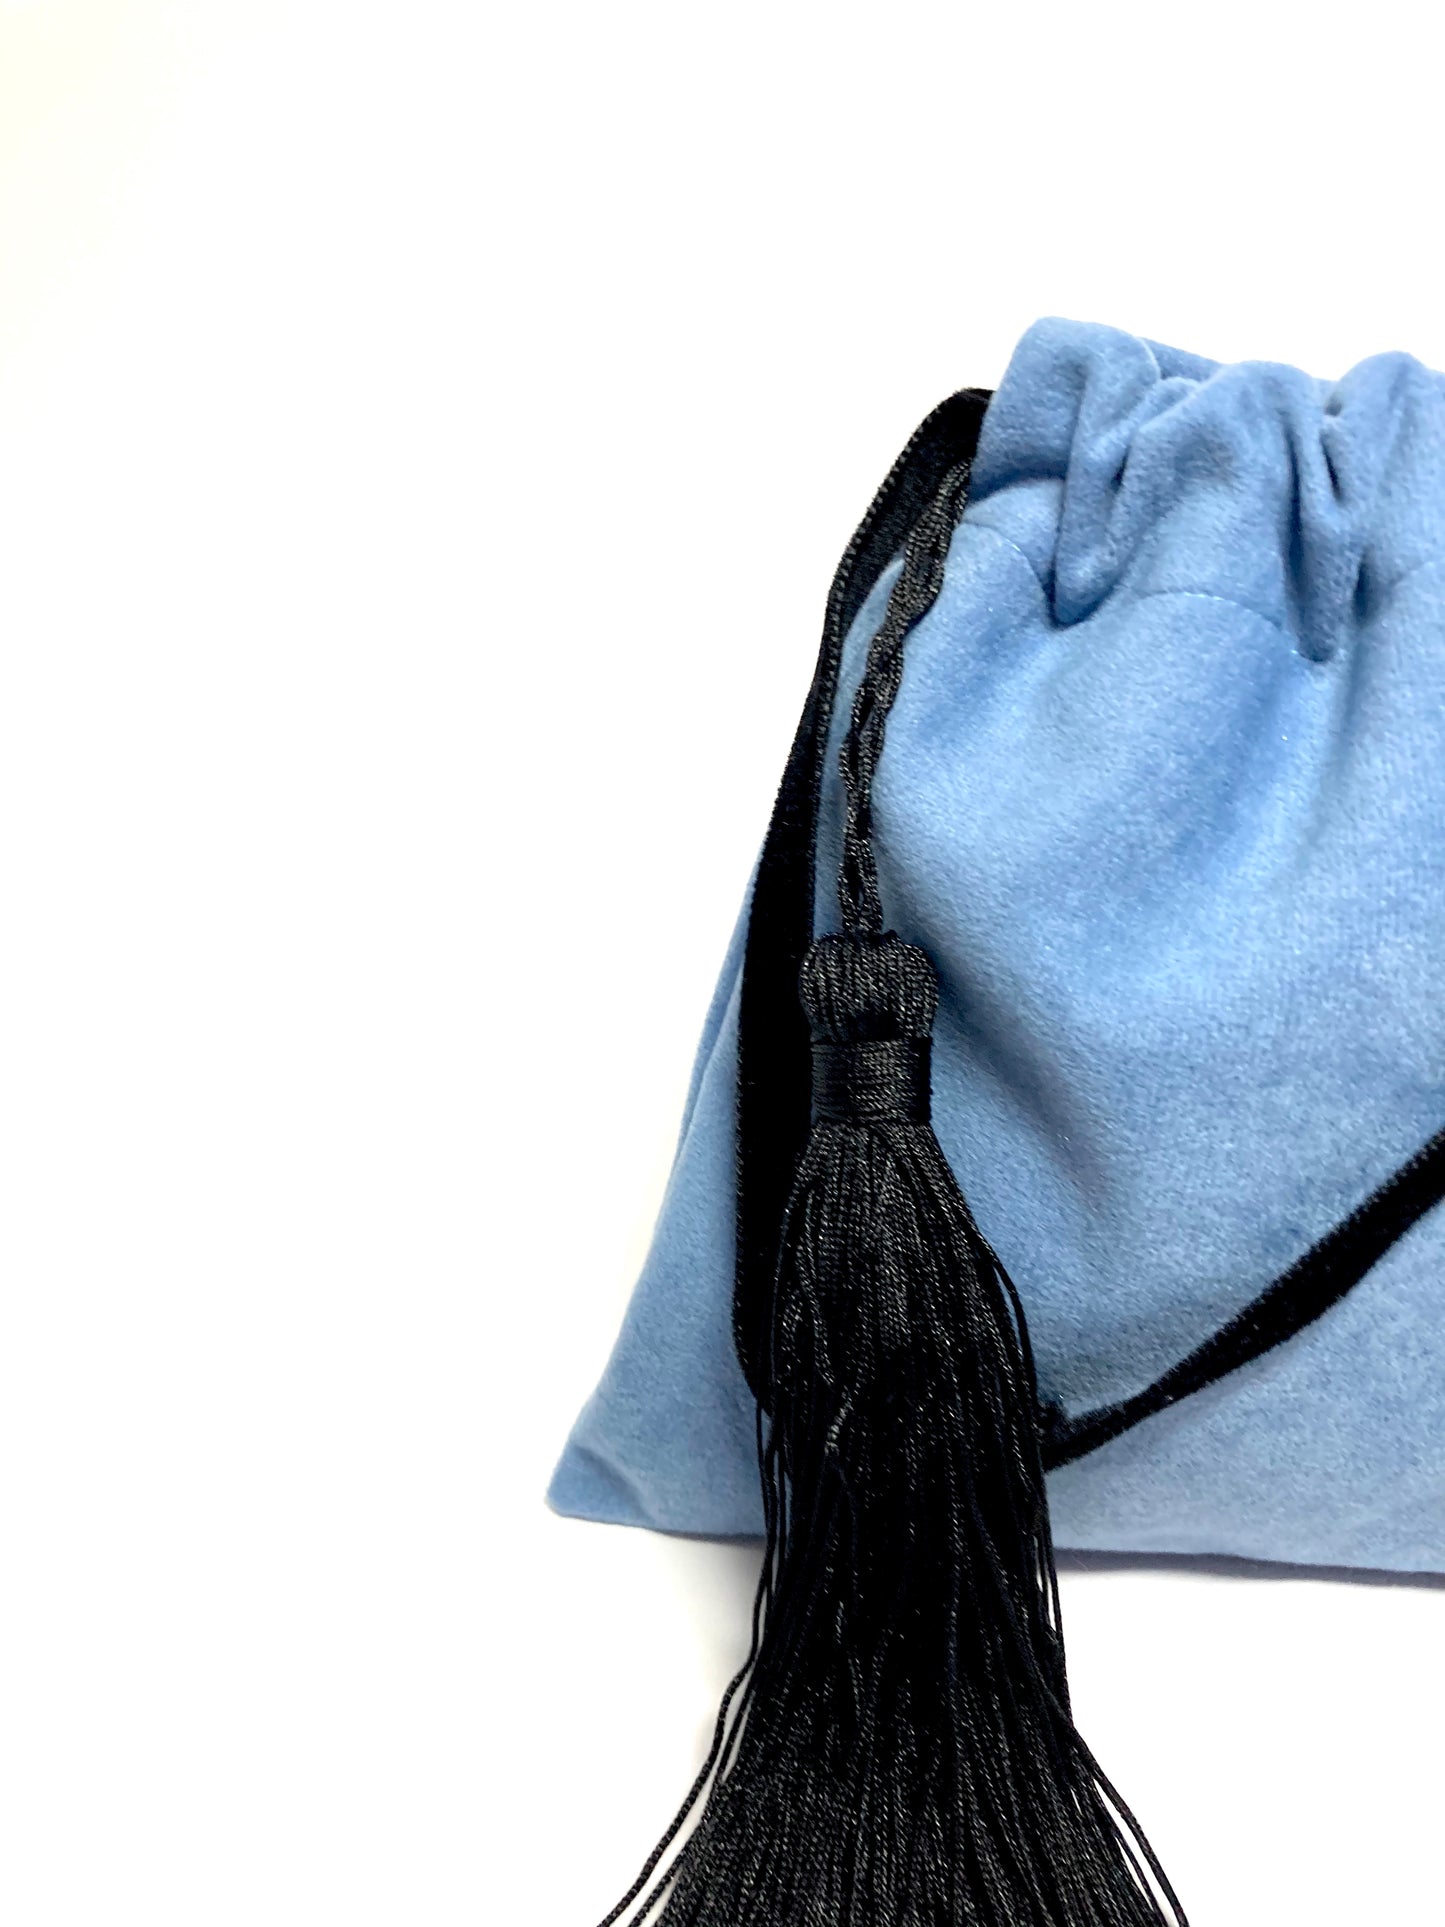 Little blue velvet handbag